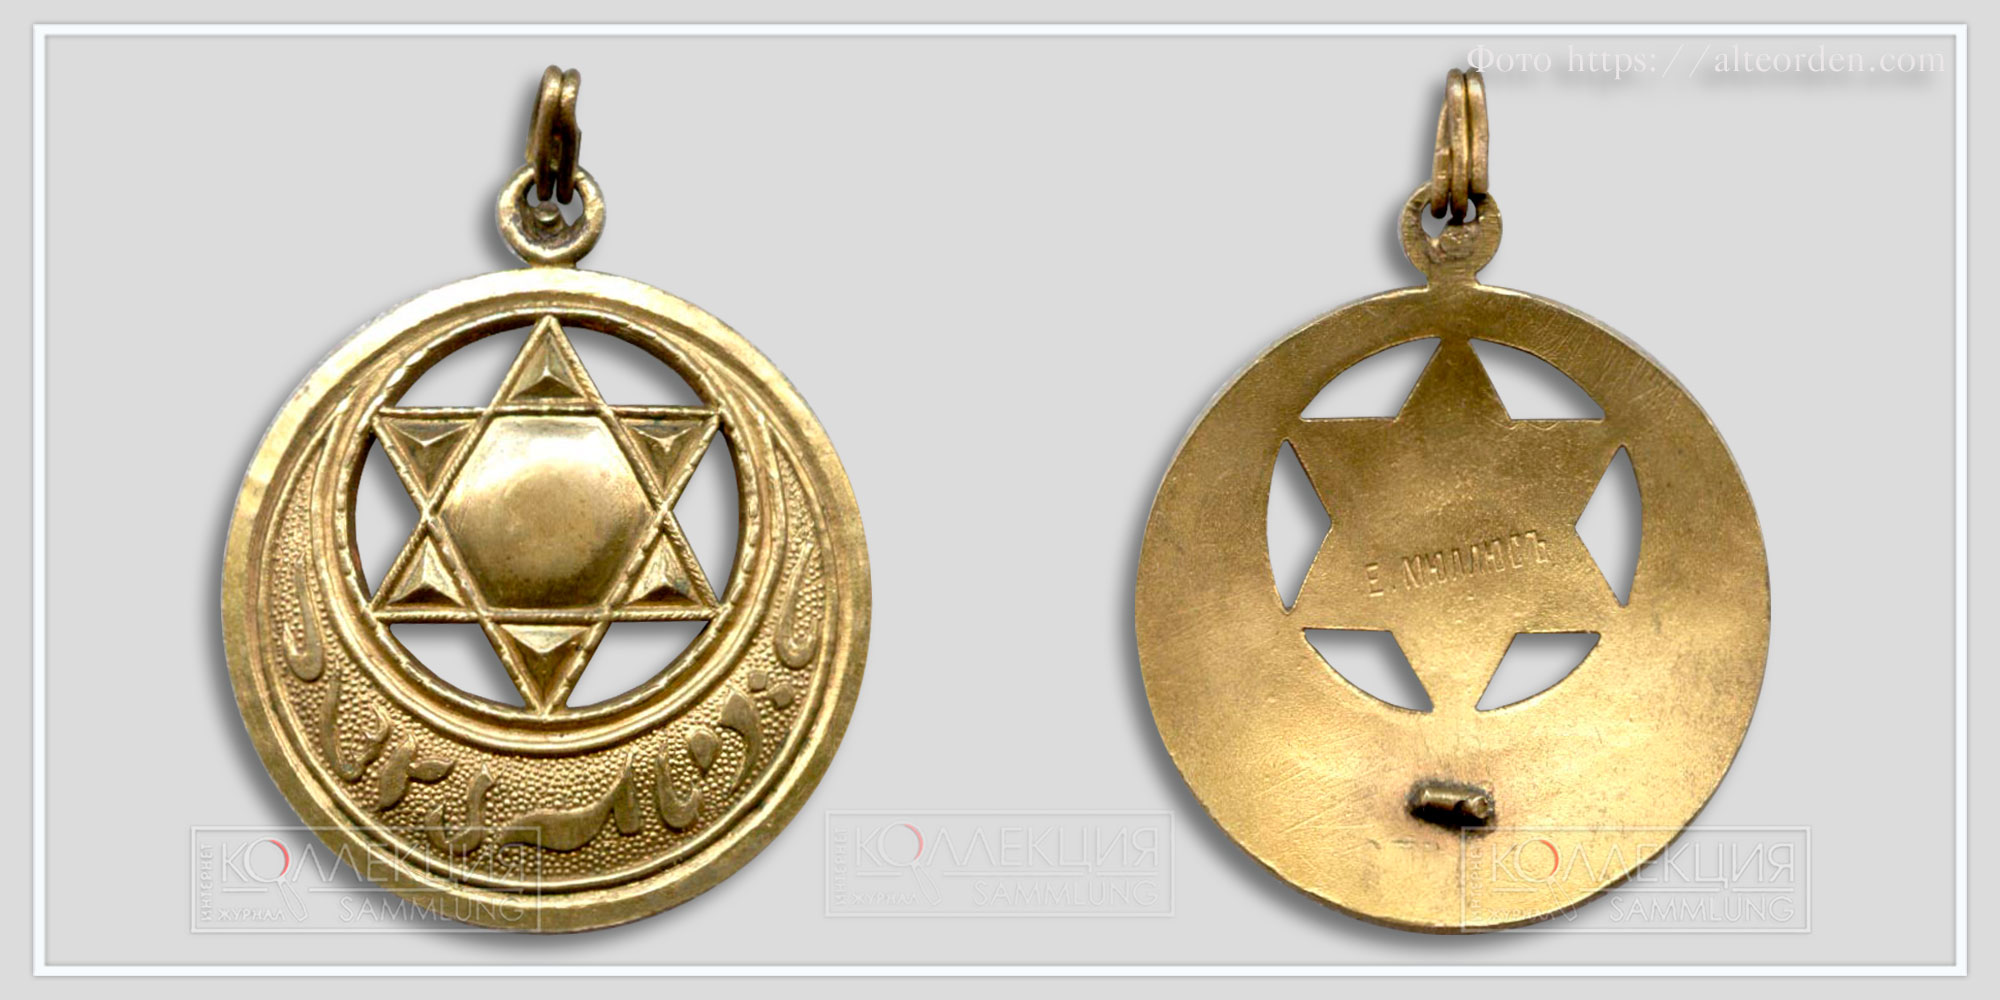 Бухарская медаль с частной коллекции, фото с alteorden.com